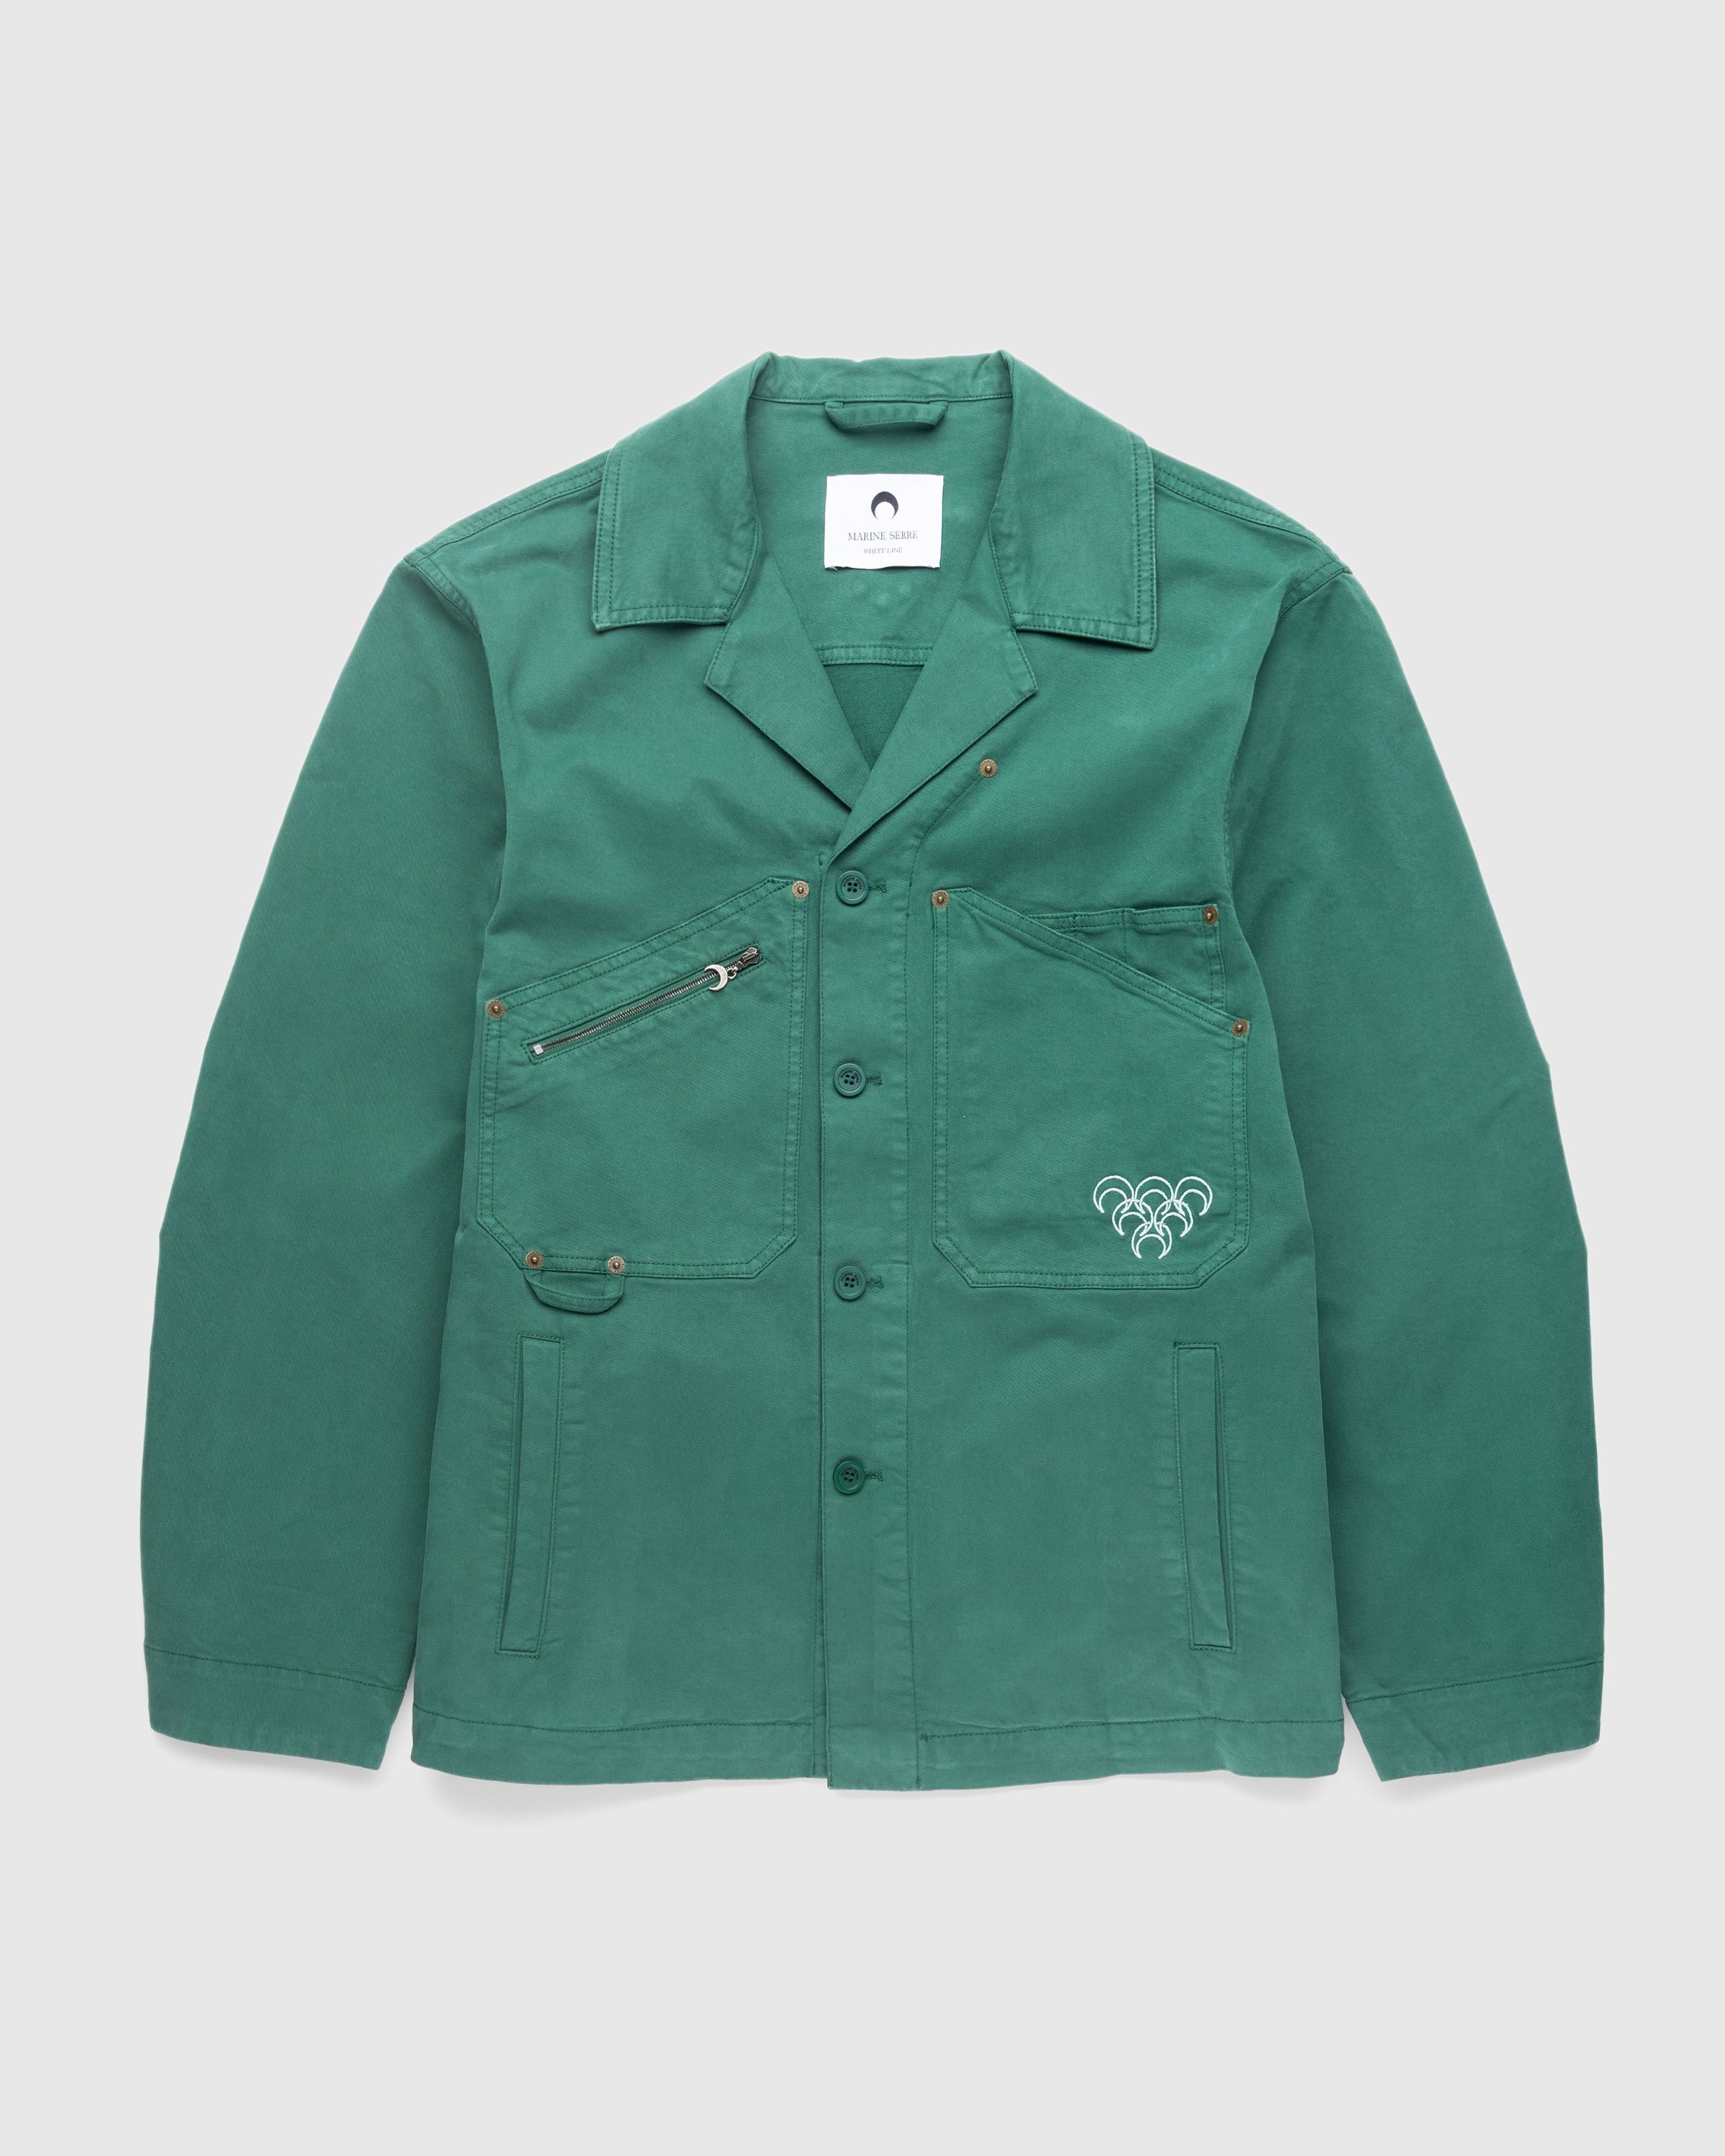 Marine Serre - Workwear Jacket Evergreen - Clothing - Green - Image 1